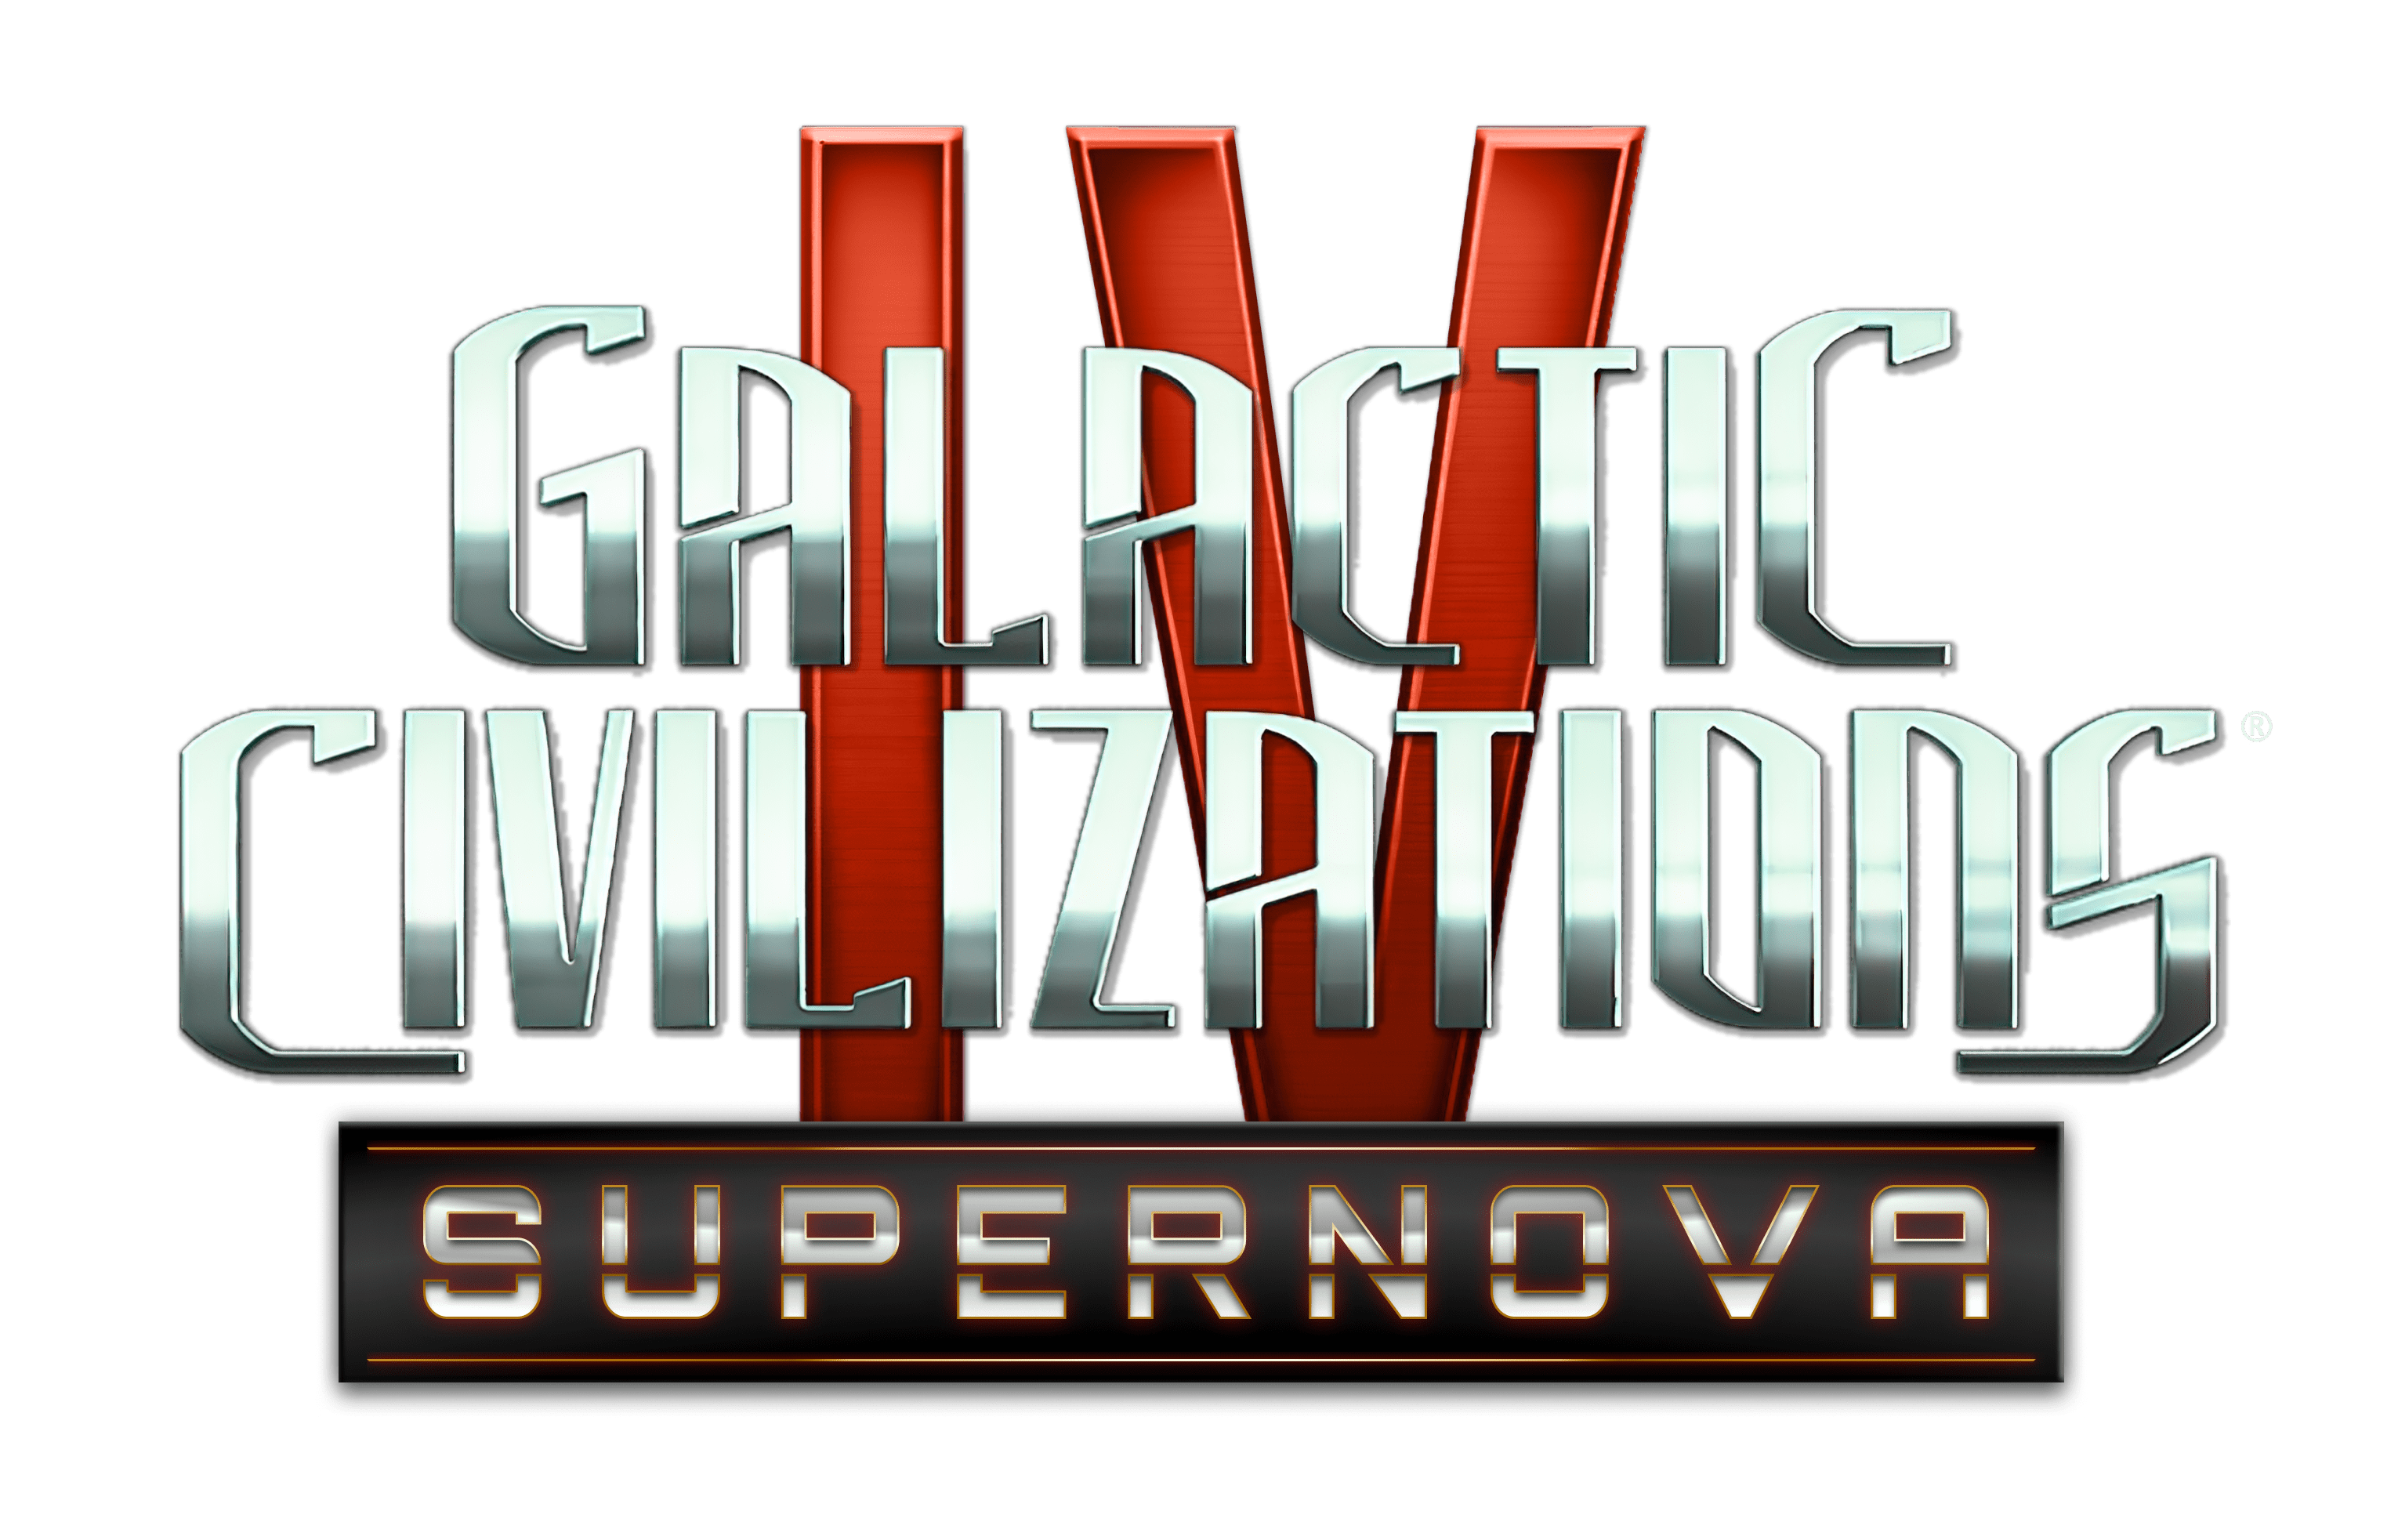 Galactic Civilizations 4: Supernova